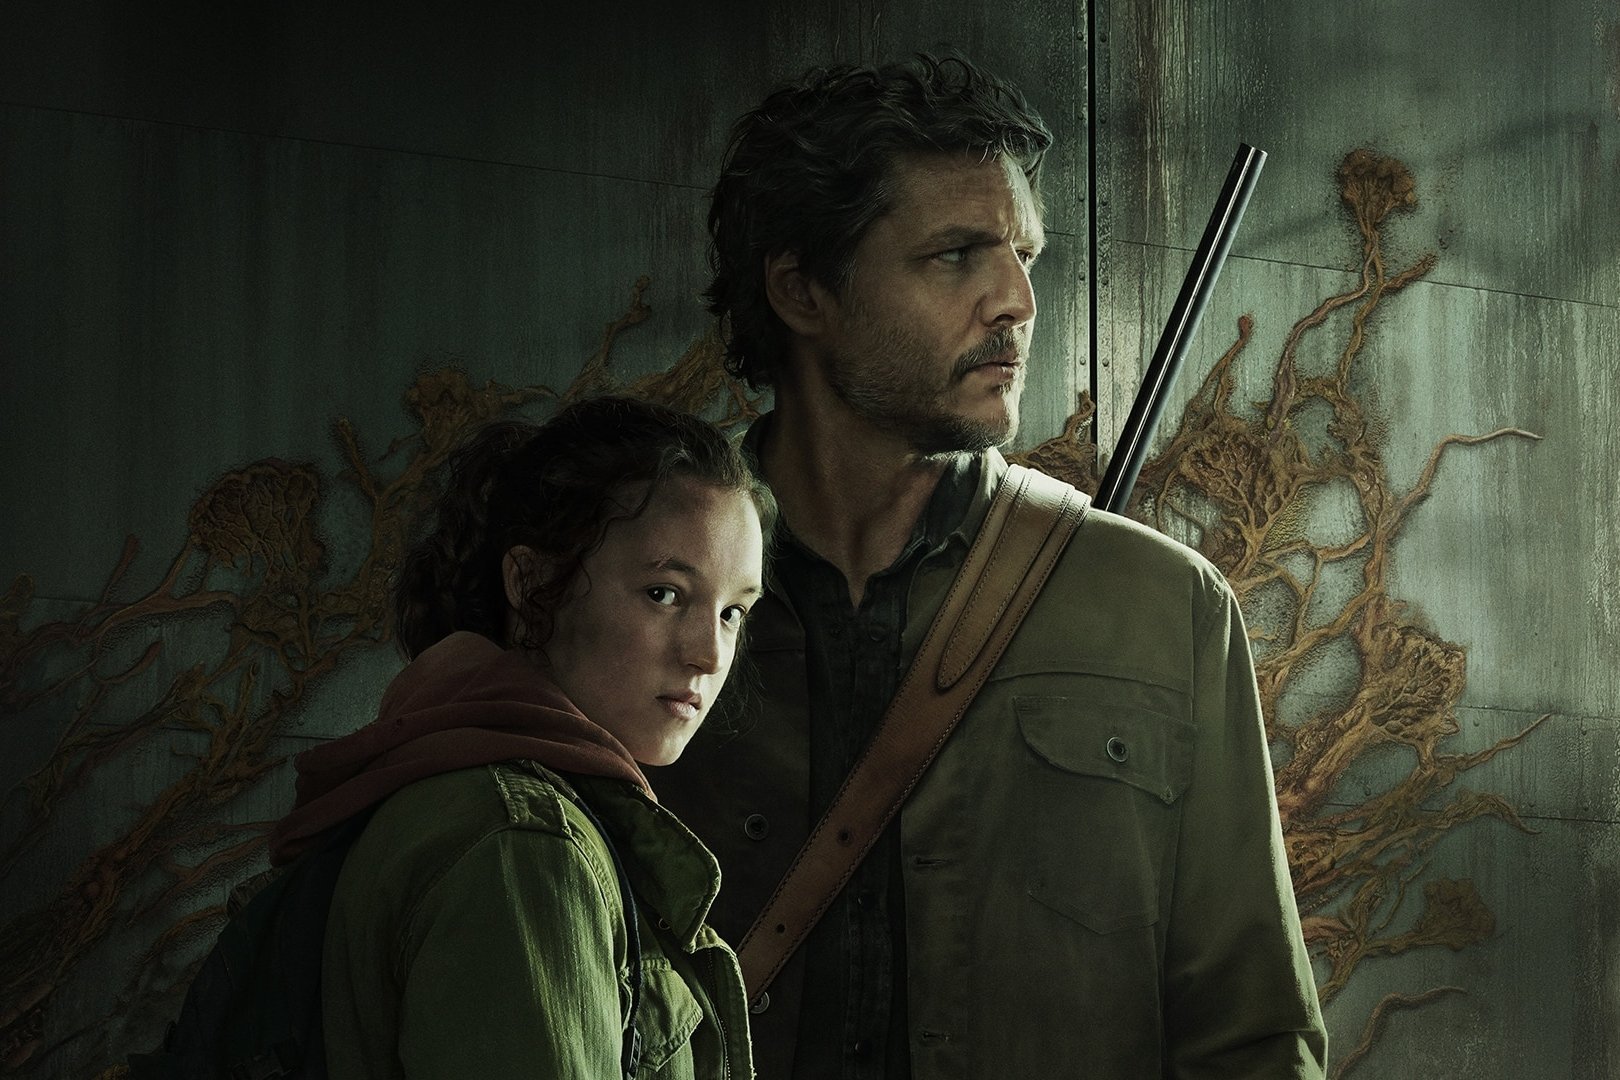 Série de The Last of Us: produtor nega teoria sobre Abby